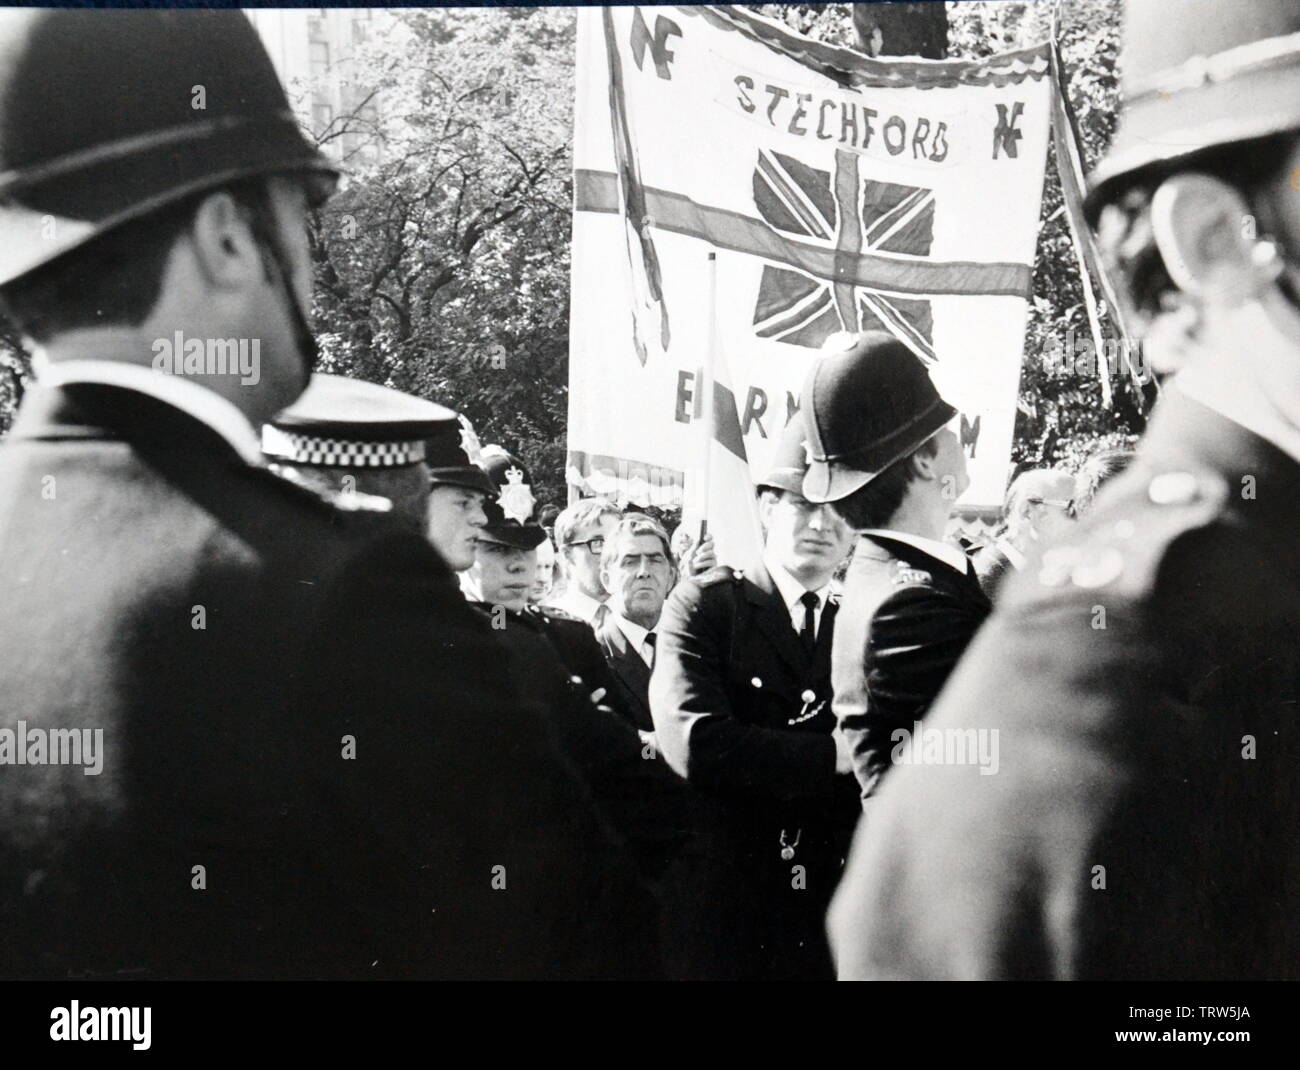 National Front March, Londres, Angleterre, entouré de policiers, septembre 1978 Banque D'Images